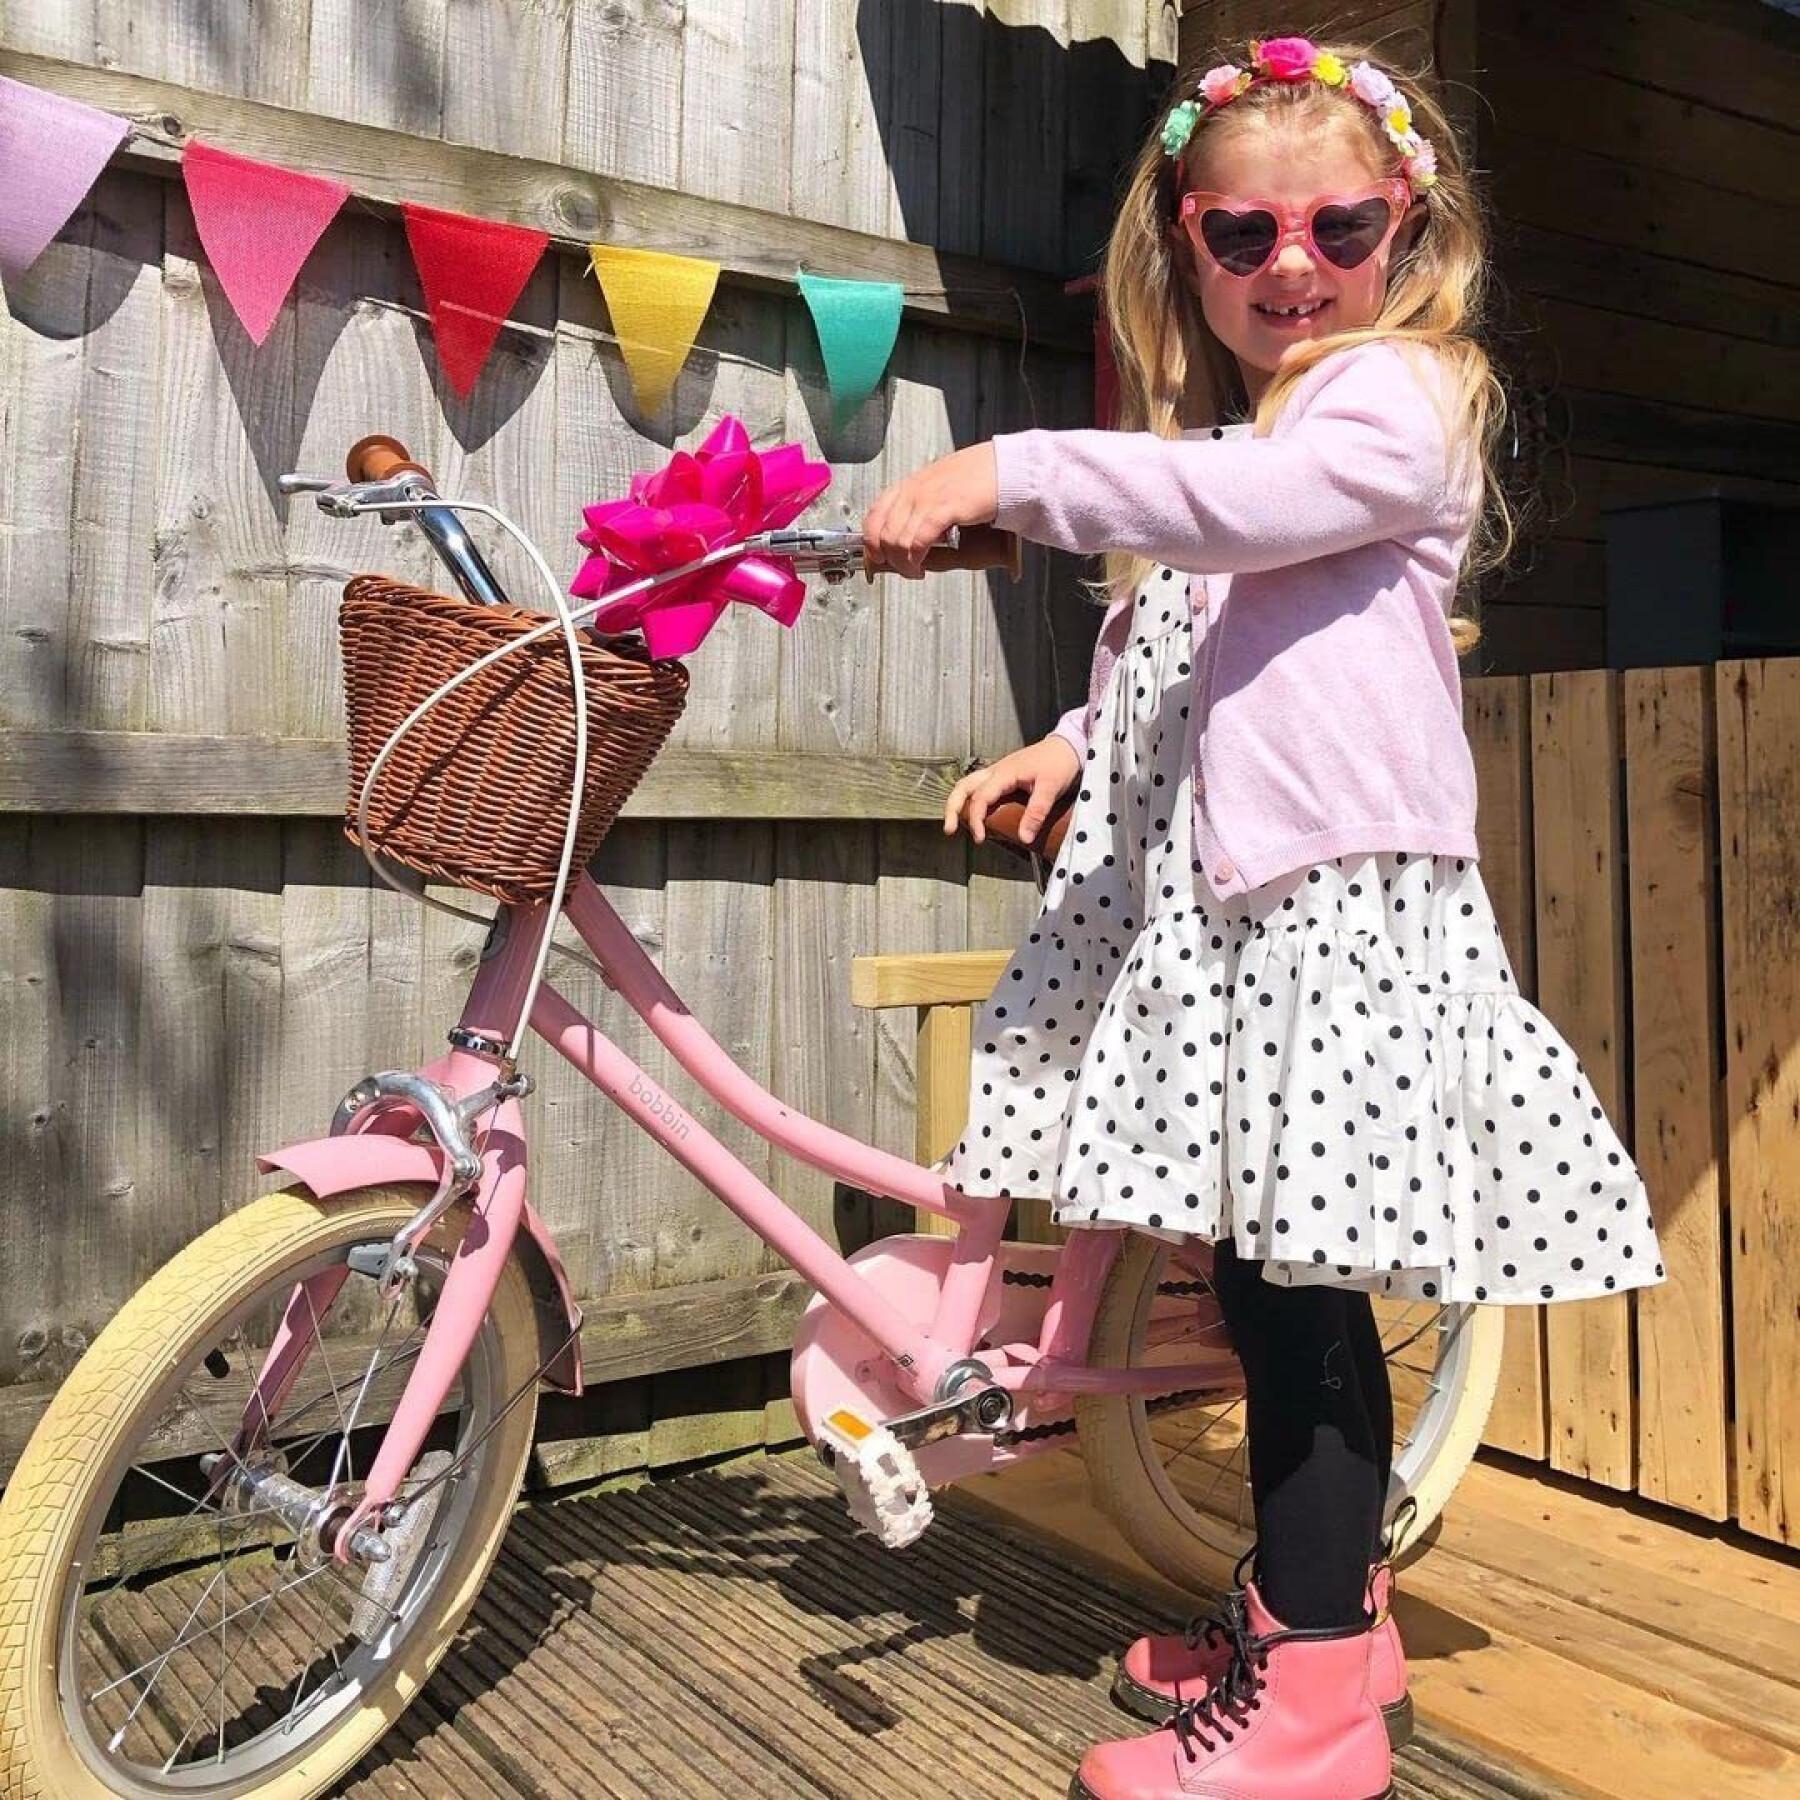 Bicicleta para crianças Bobbin Bikes Gingersnap